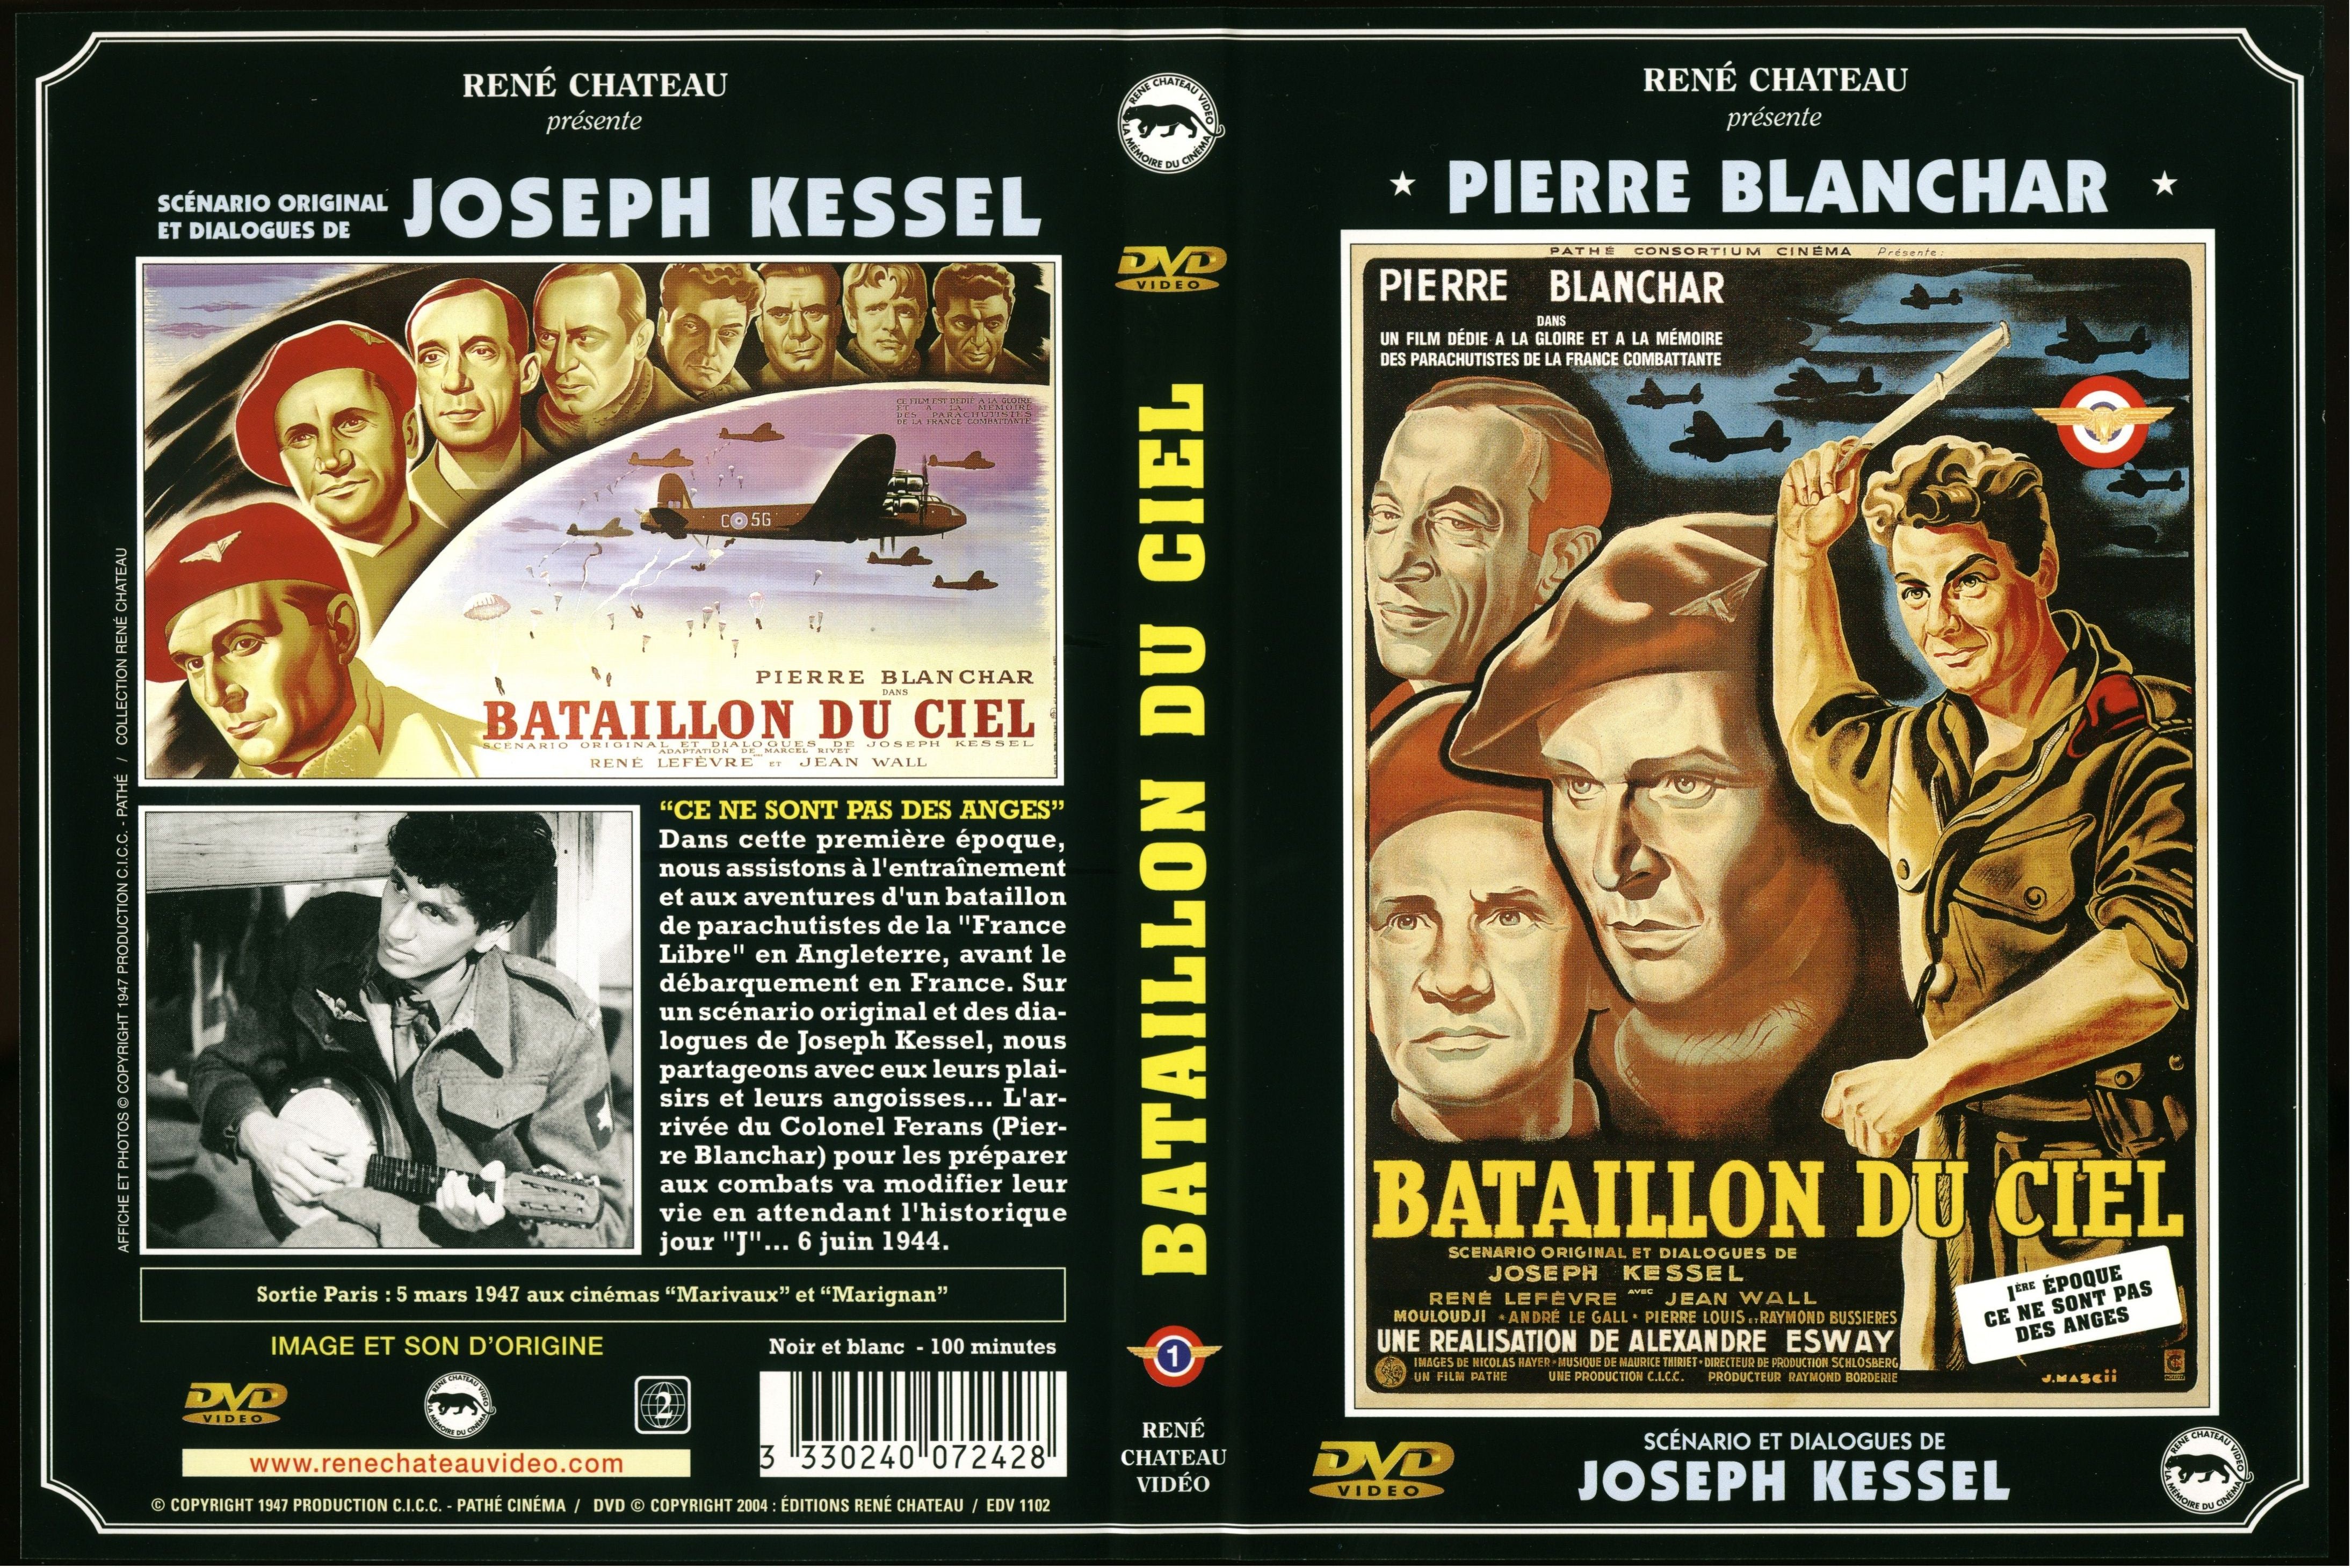 Jaquette DVD Bataillon du ciel 1 re poque